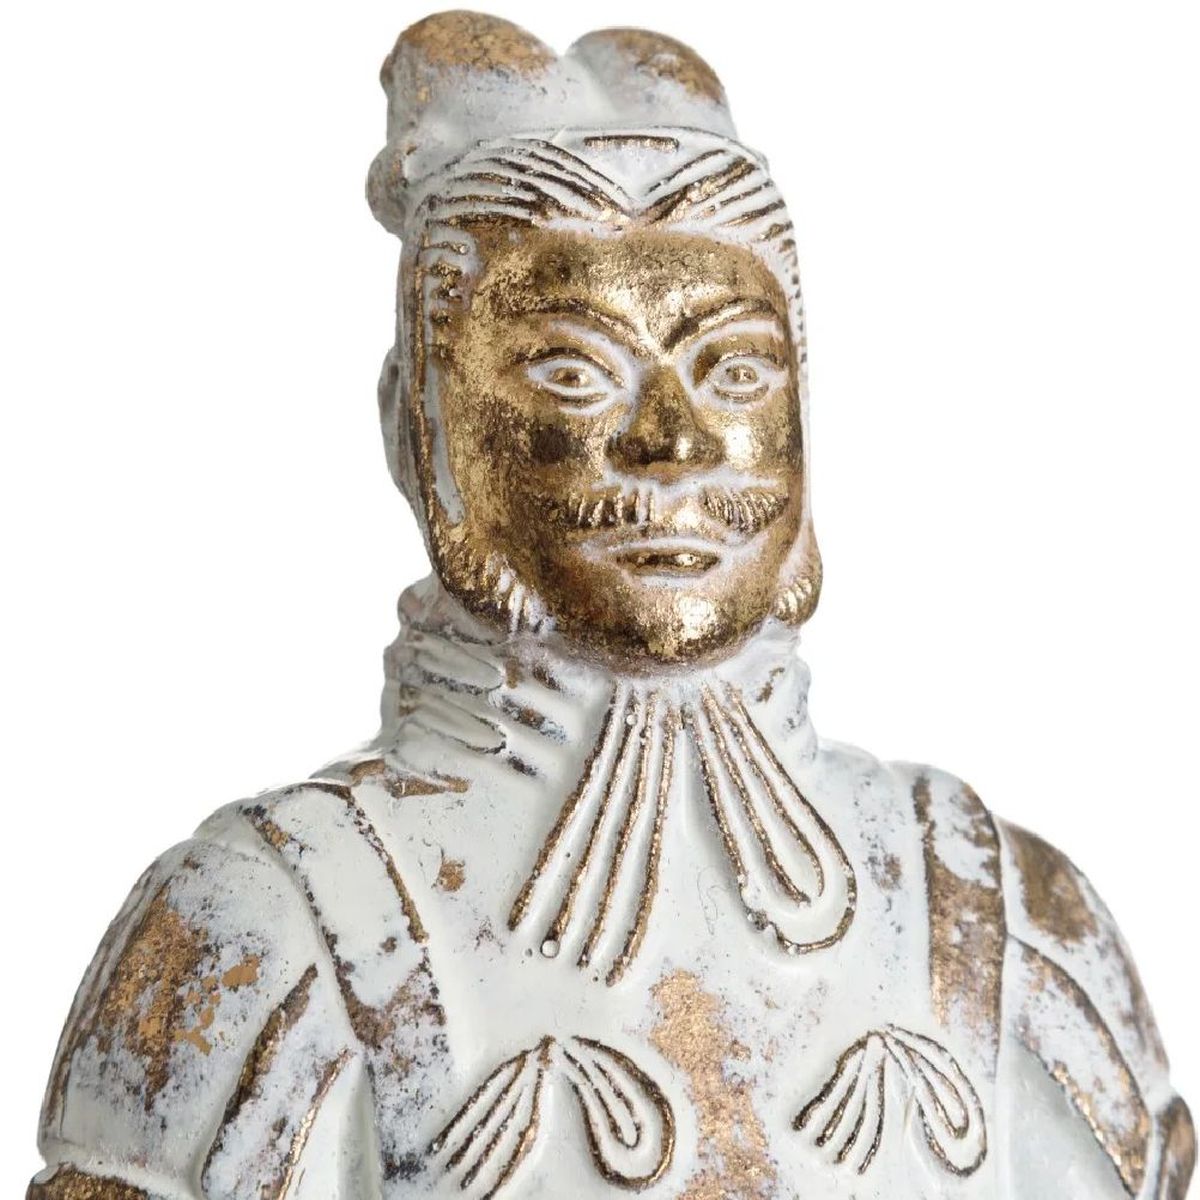 Statuette Soldat en terre cuite de l'Empereur Qin